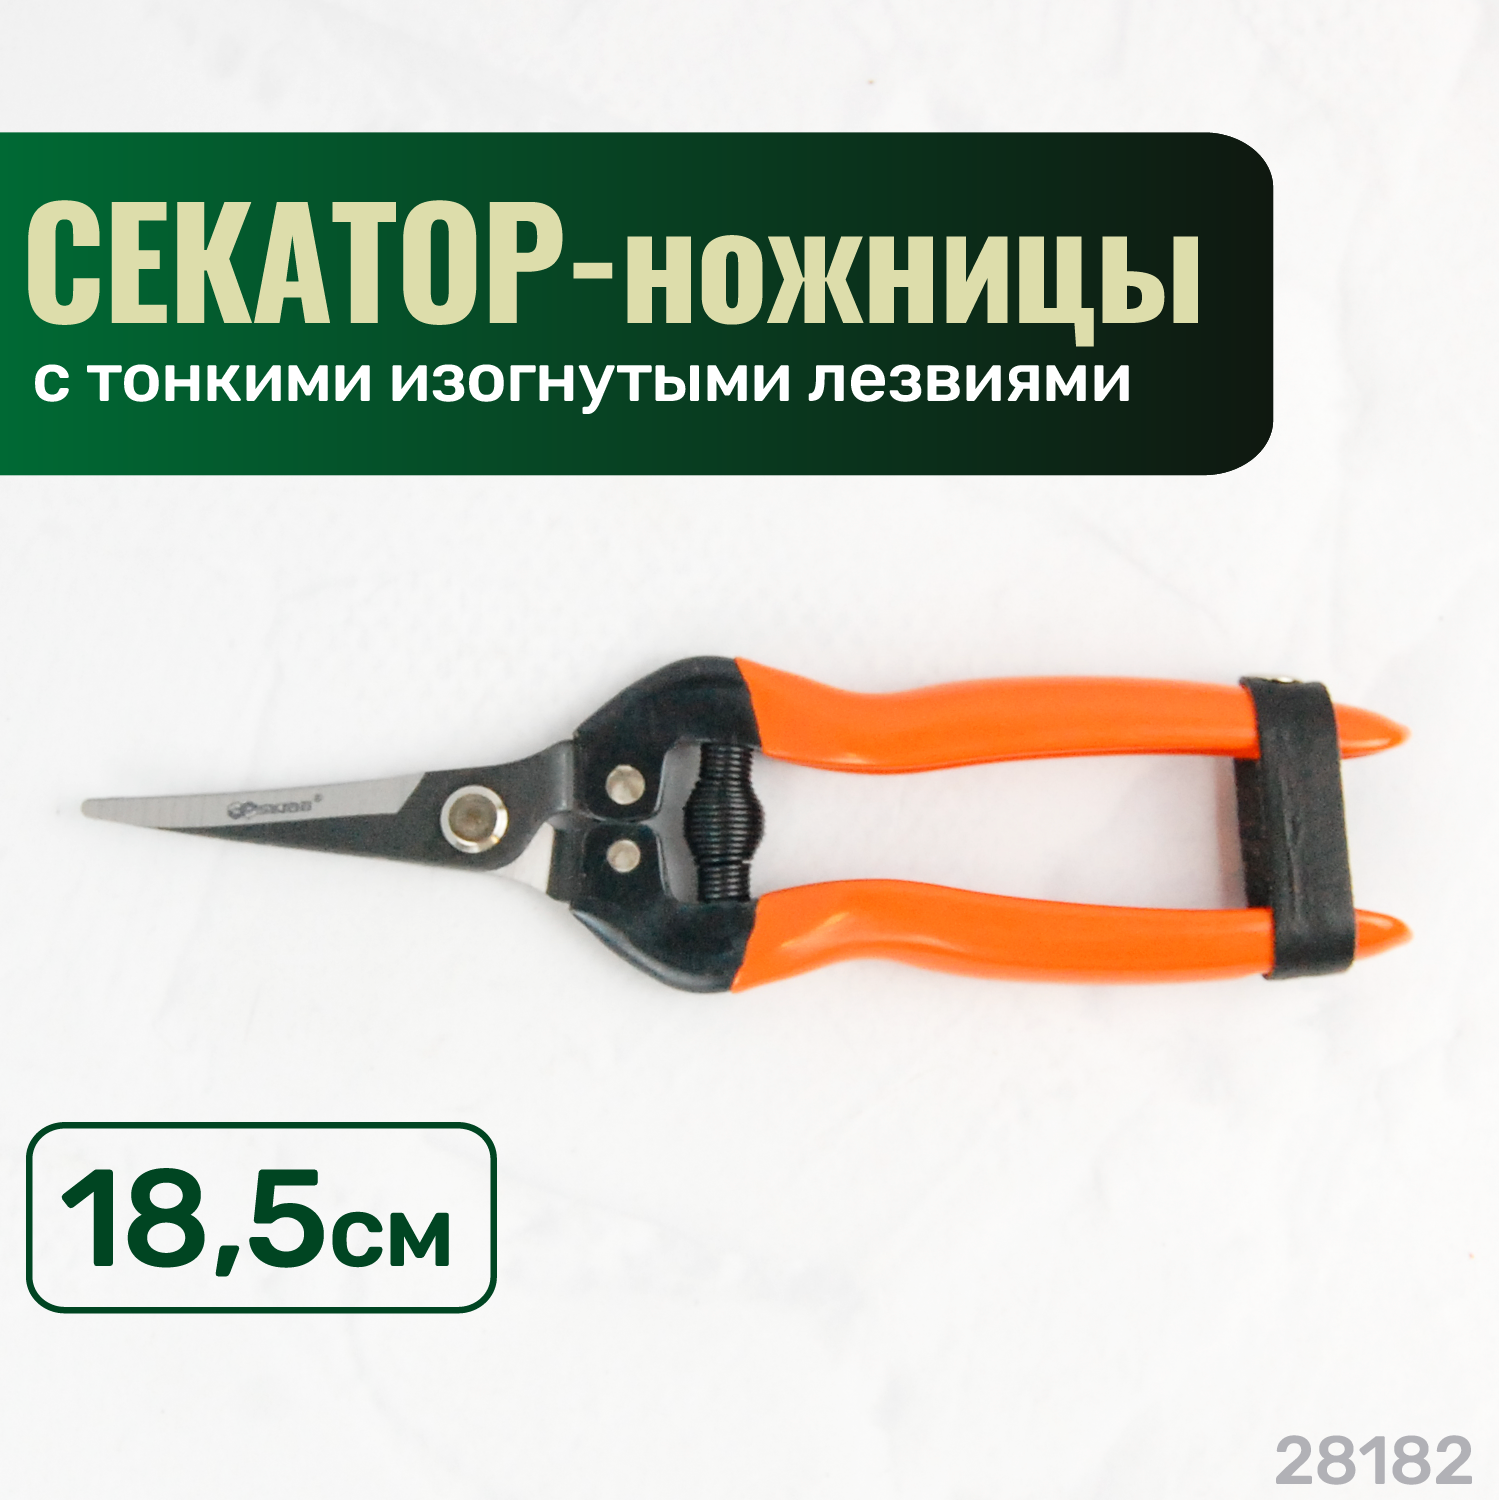 Секатор-ножницы SKRAB садовый изогнутые лезвия 185мм SK5 28182 оранжевый